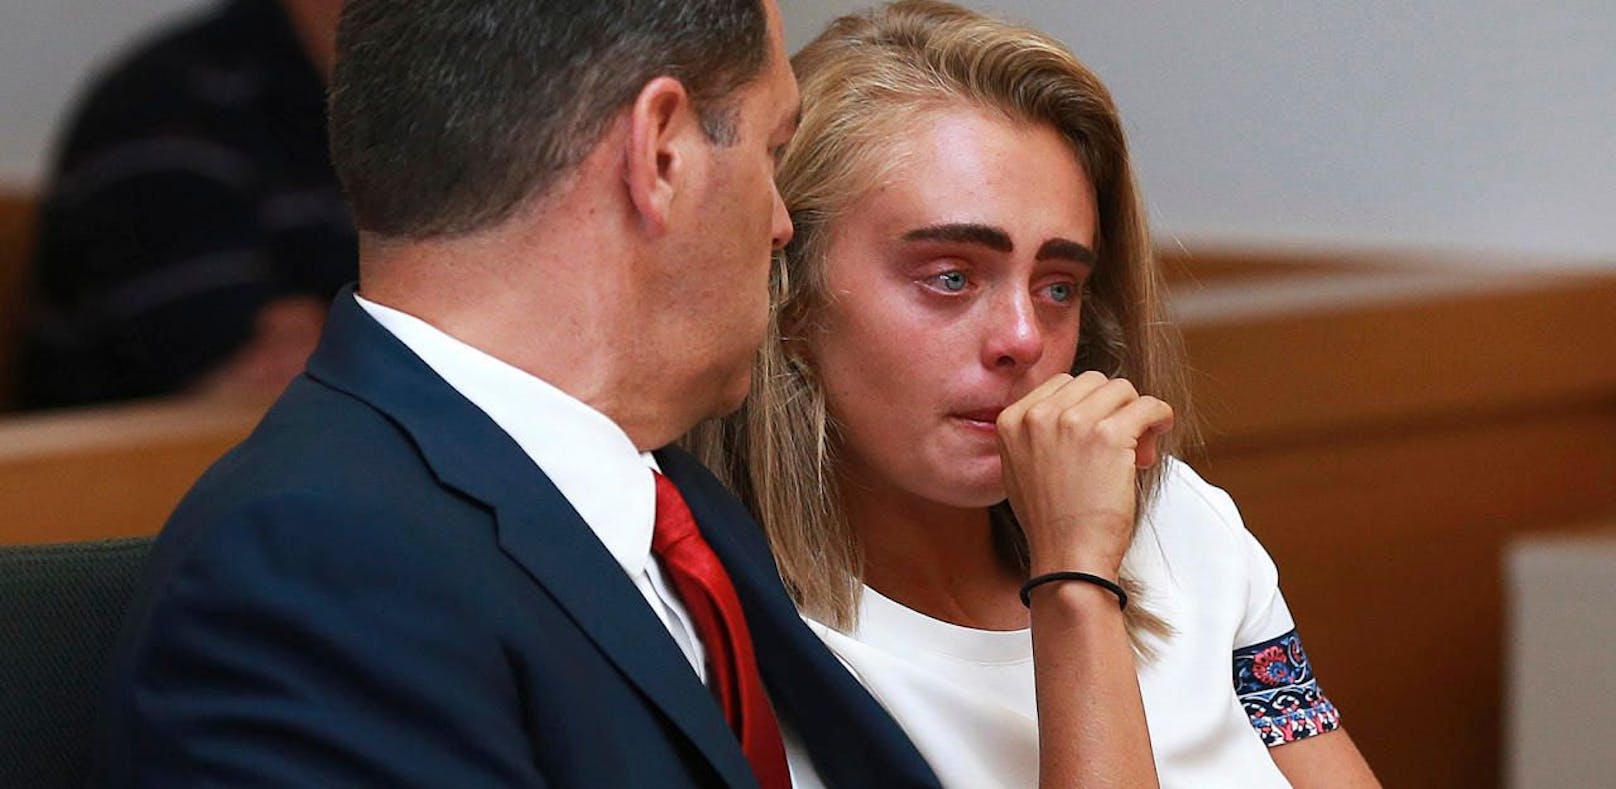 Die 20-jährige Michelle Carter wurde zu 15 Monaten Haft verurteilt, weil sie 2014 ihren damals 18-jährigen Freund mit SMS in den Selbstmord getrieben hat.